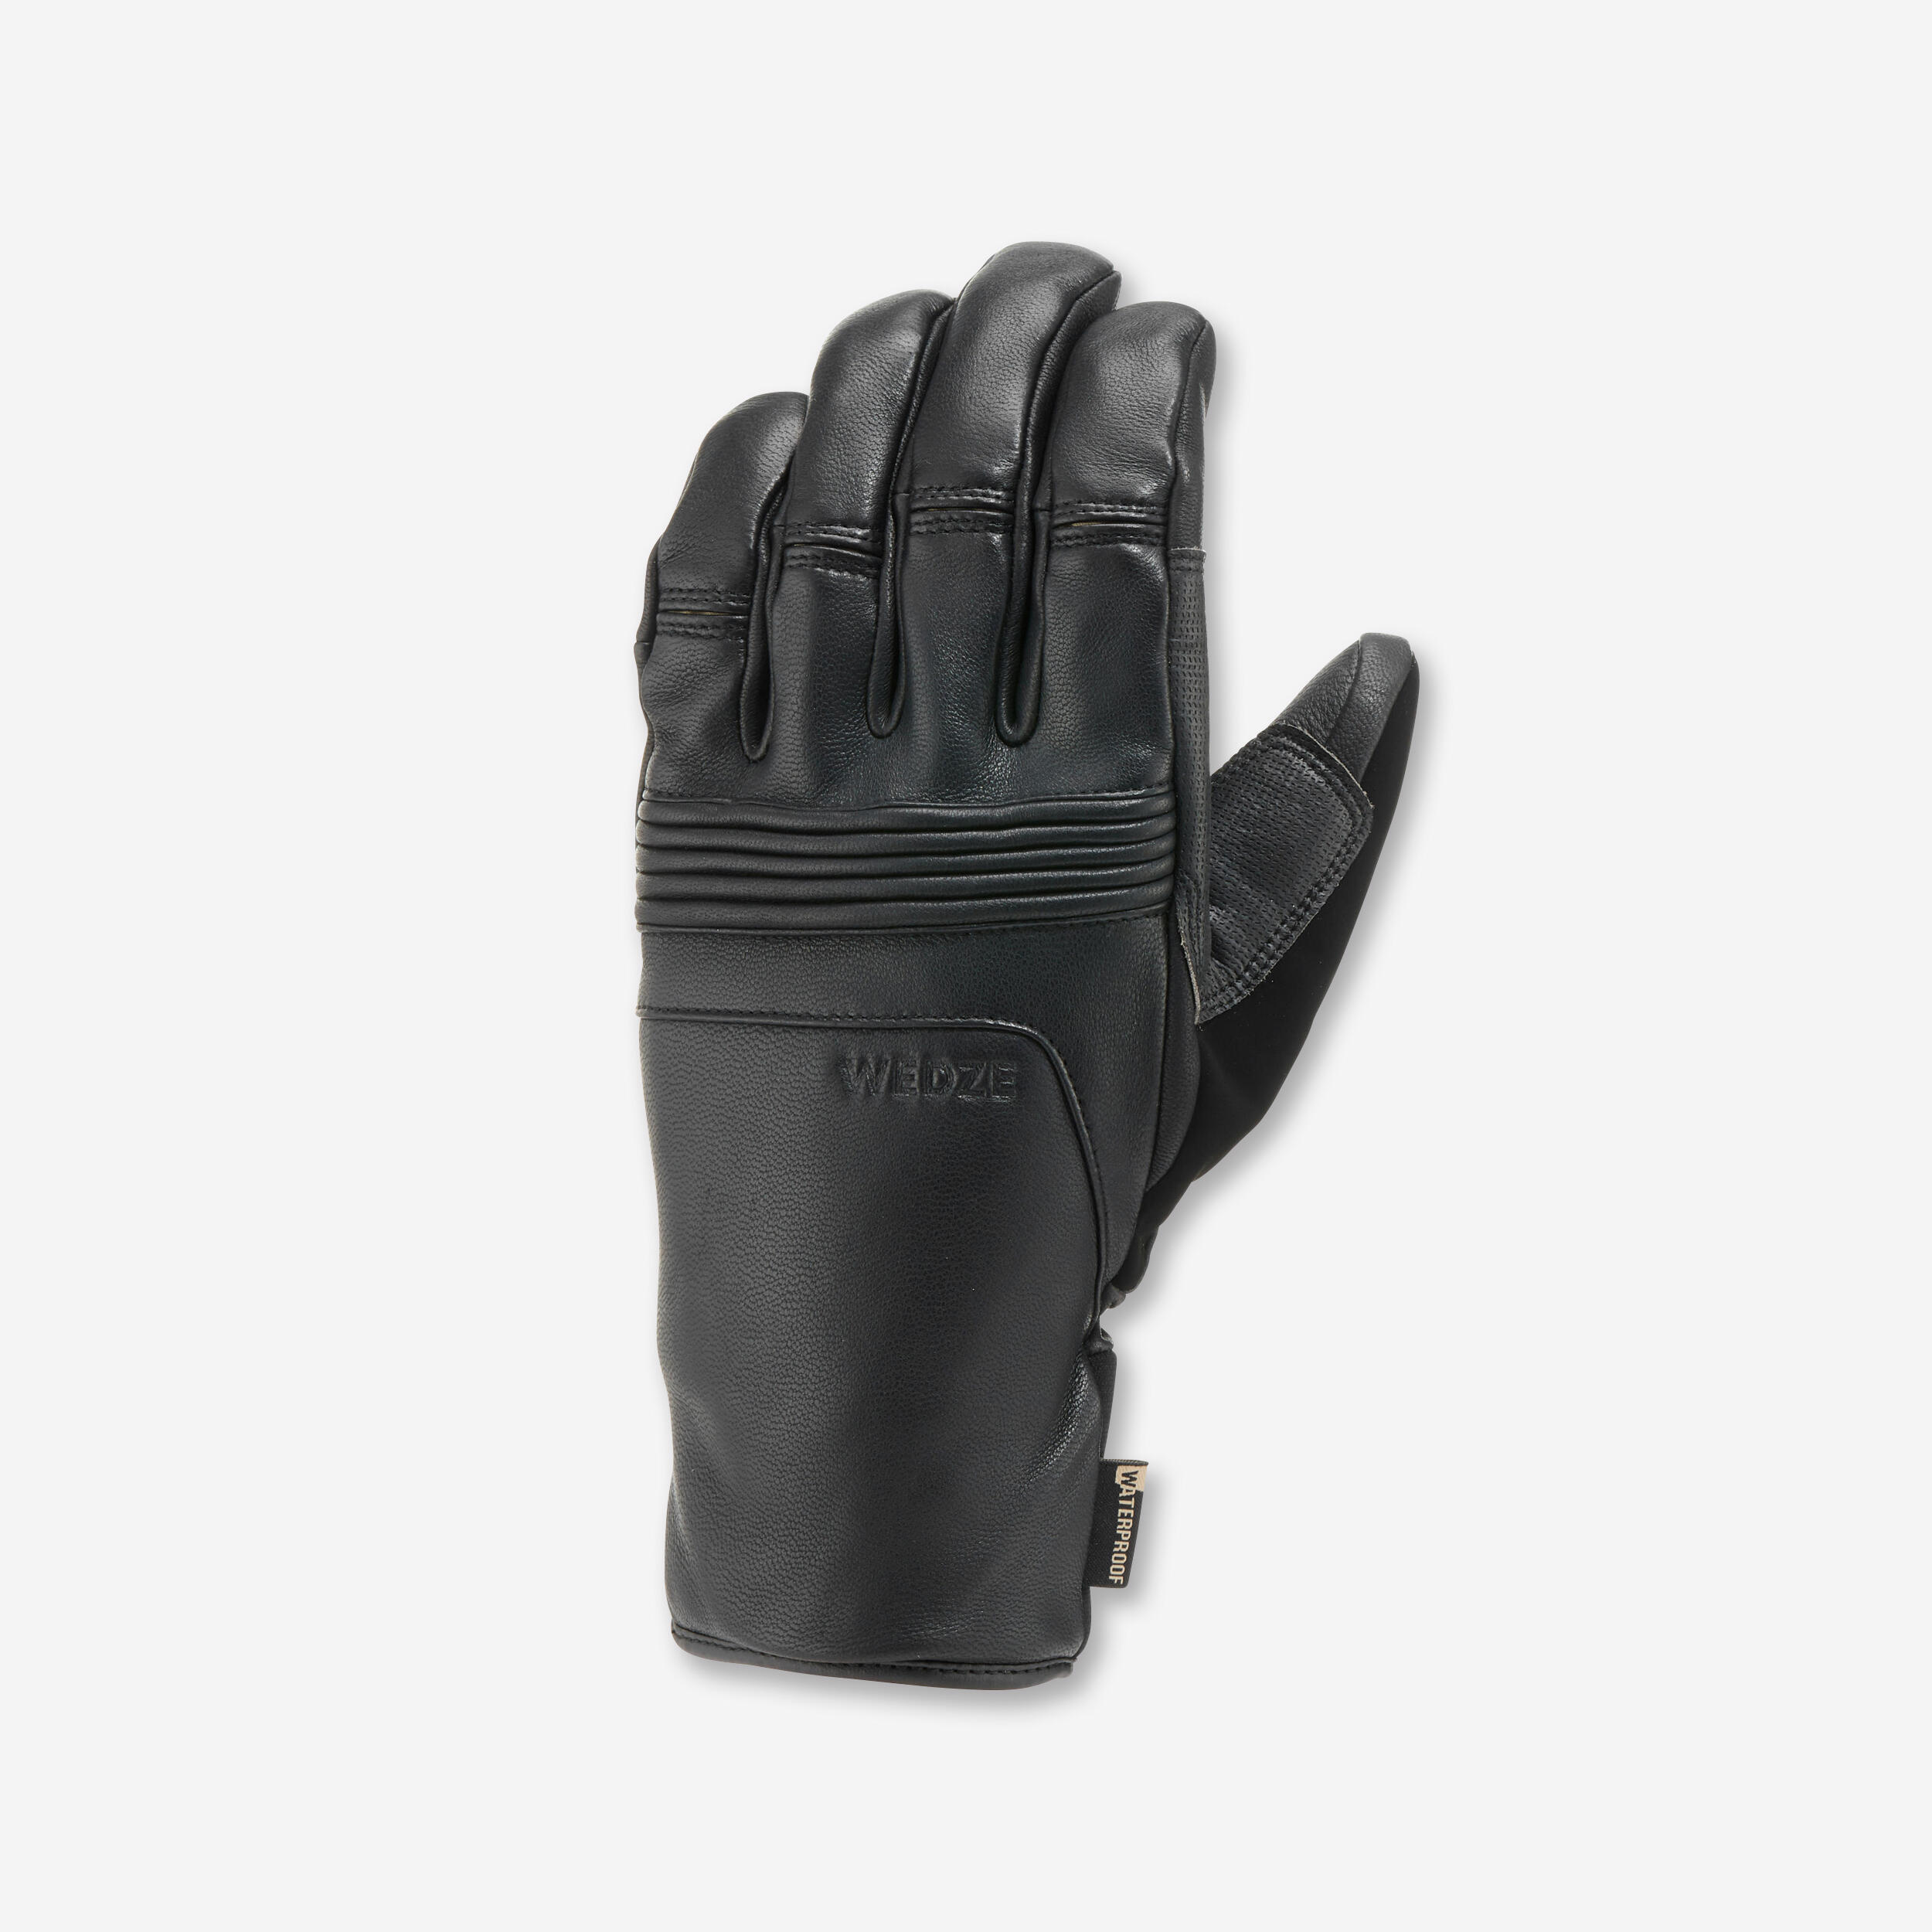 gants de ski adulte 900 - noir - wedze